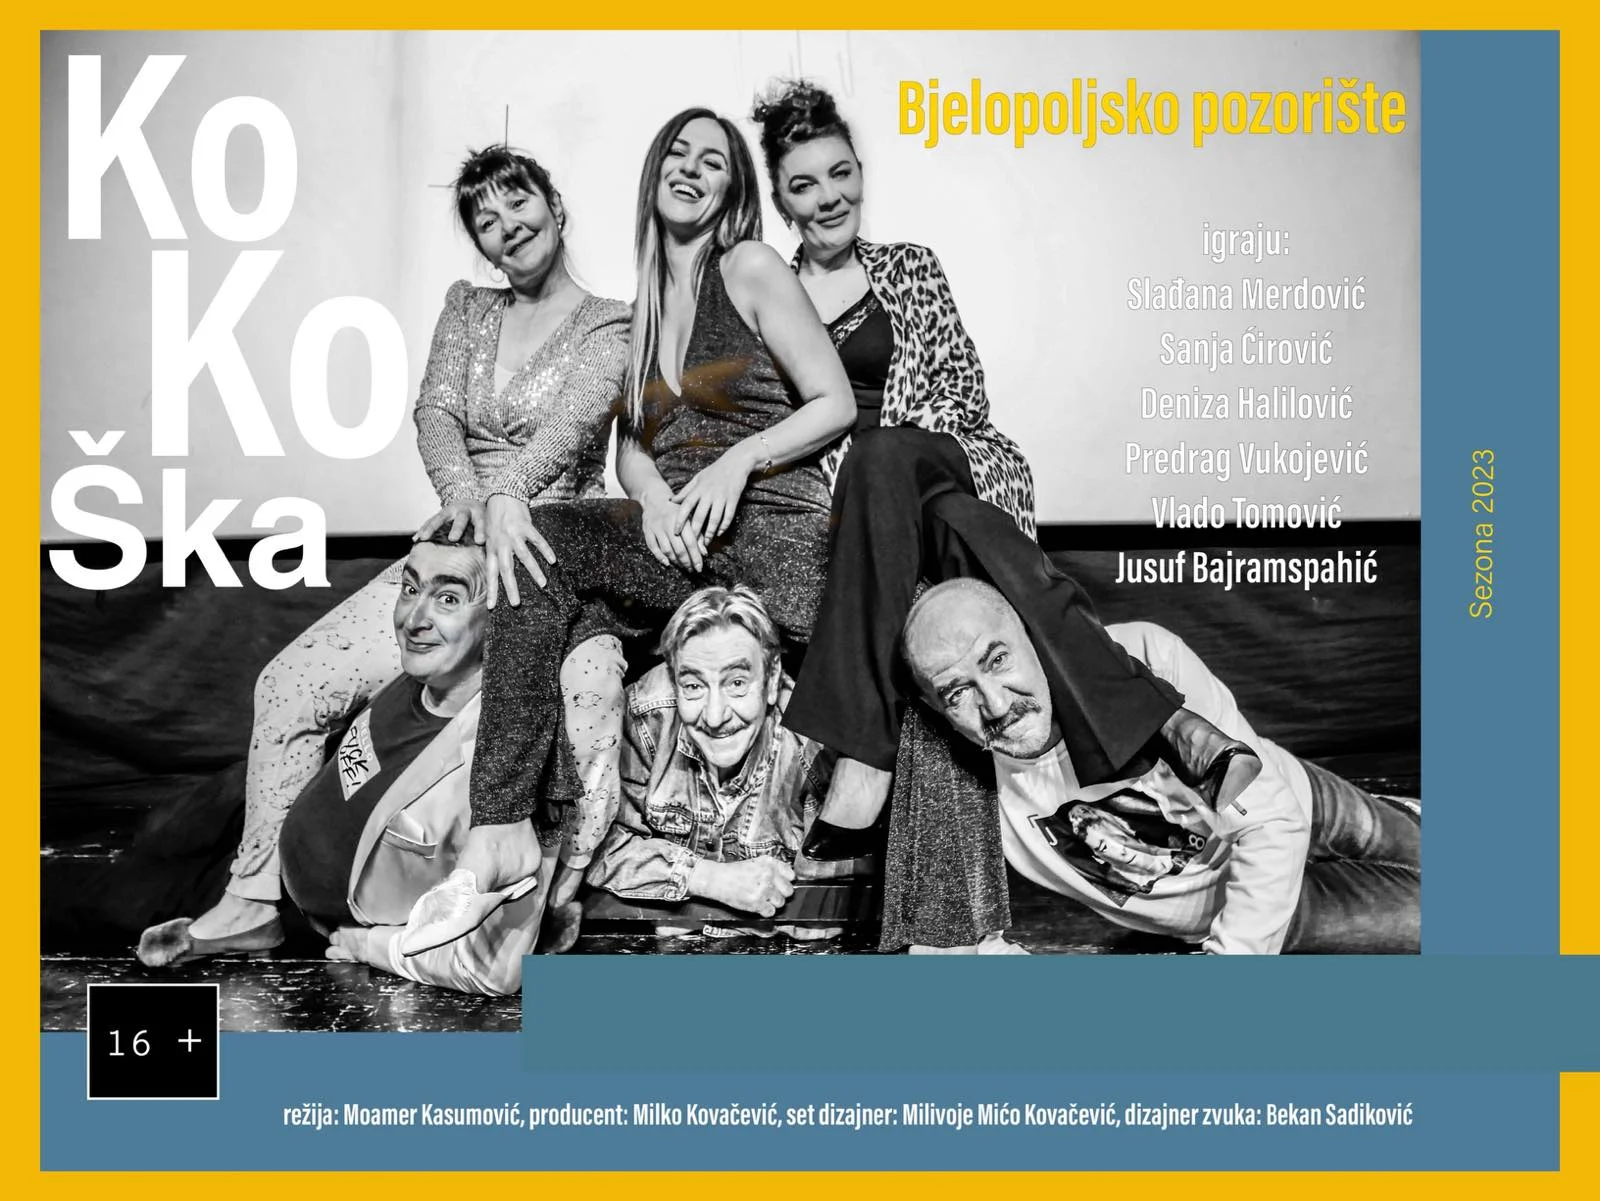 Predstava Bjelopoljskog pozorišta “Kokoška” premijerno u KIC-u